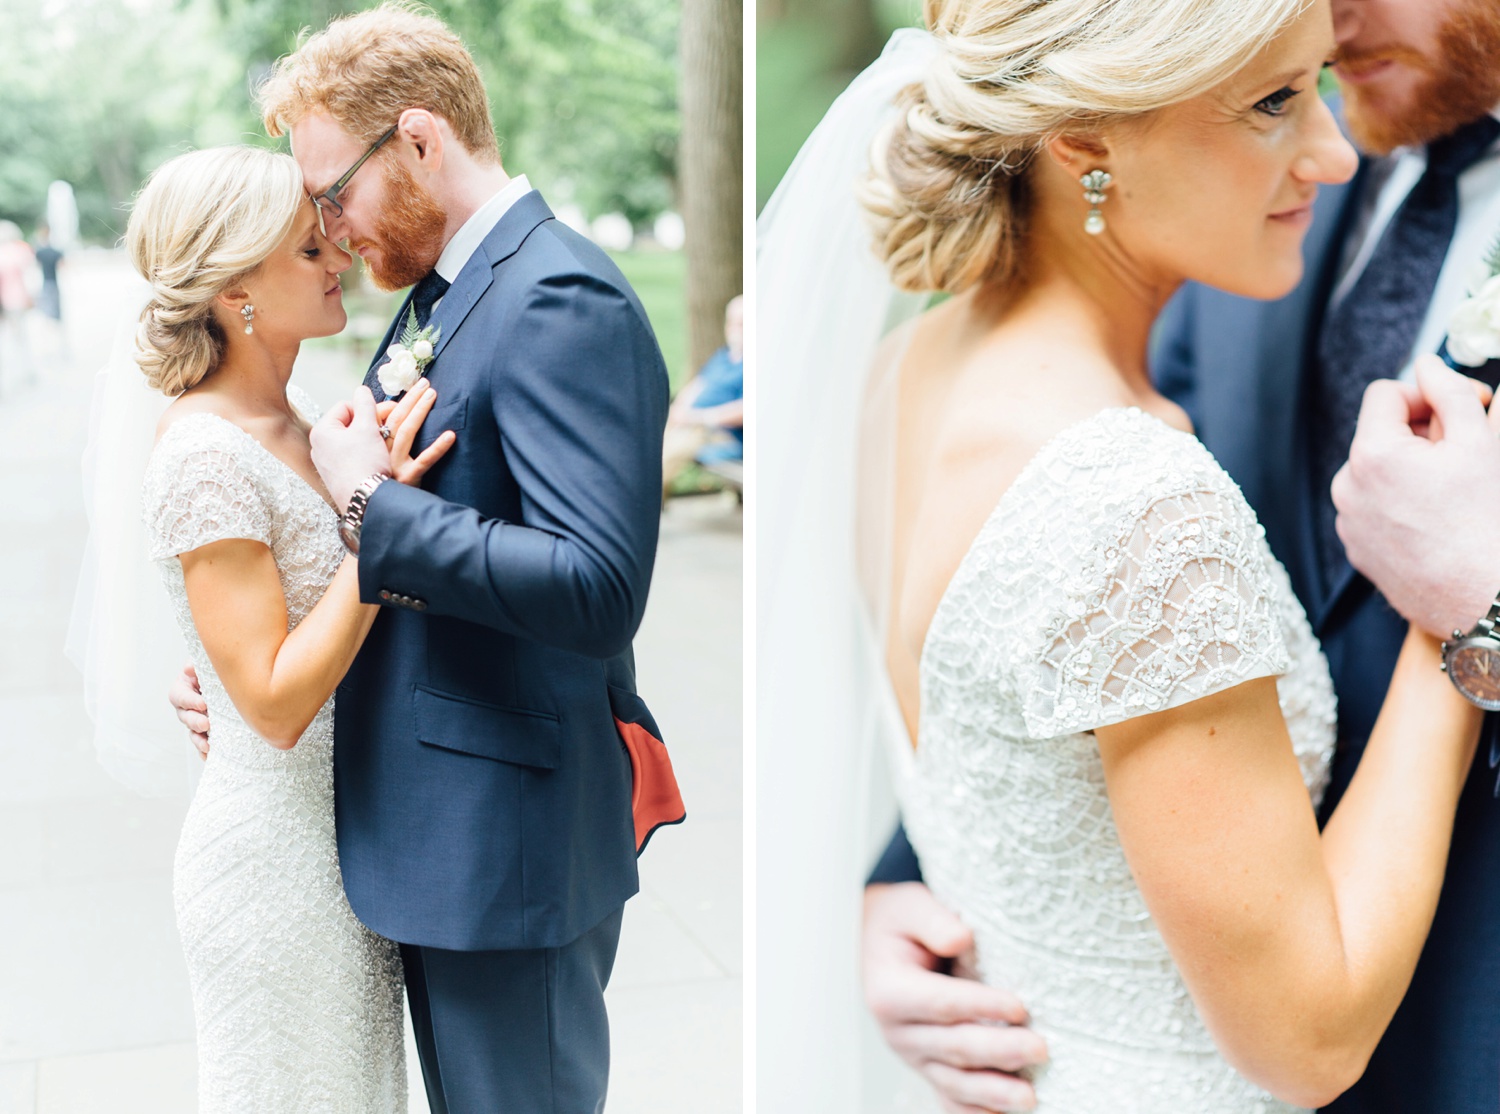 Allie + Jeremy - Washington Square Wedding - Philadelphia Wedding Photographer - Alison Dunn Photography photo